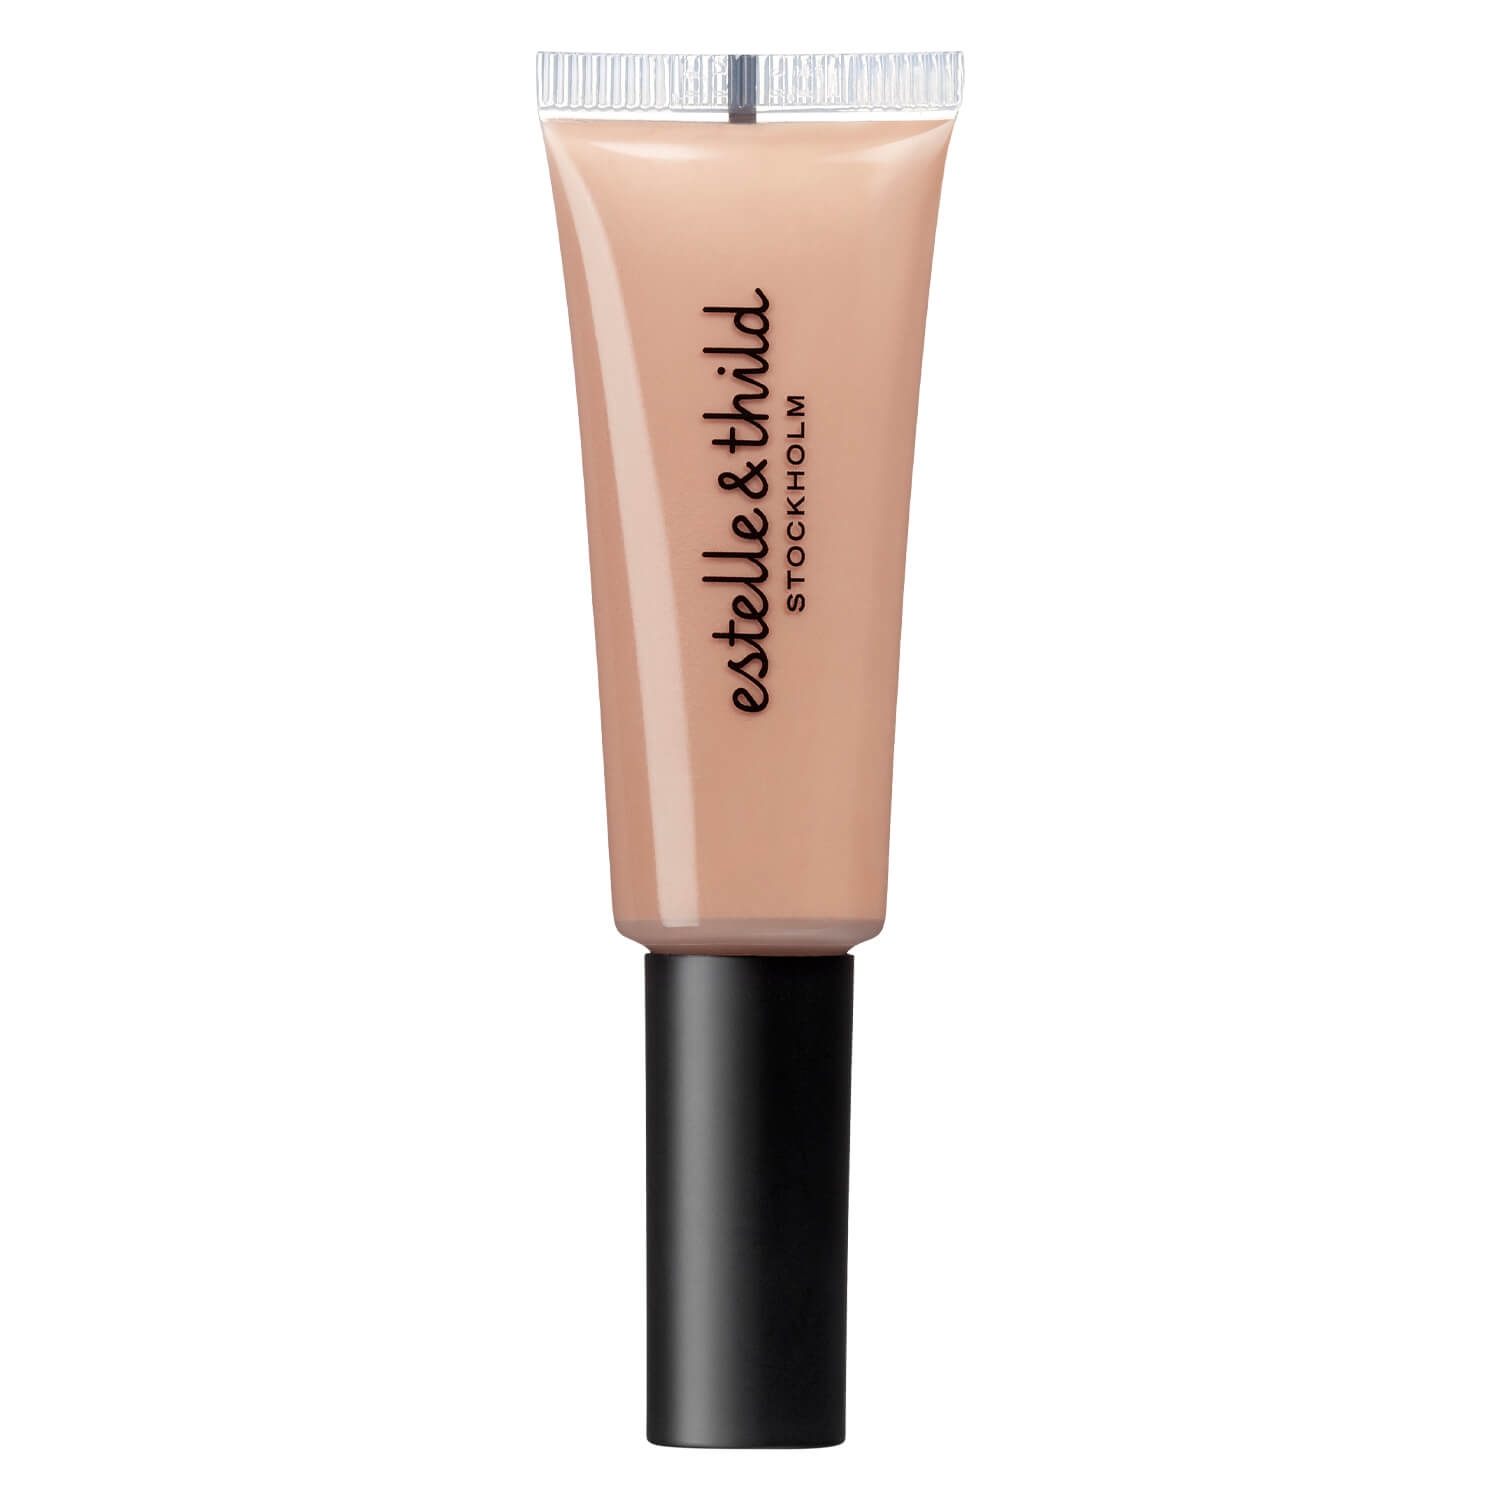 Produktbild von Estelle&Thild Make-Up - Lip Balm Blossom Beige